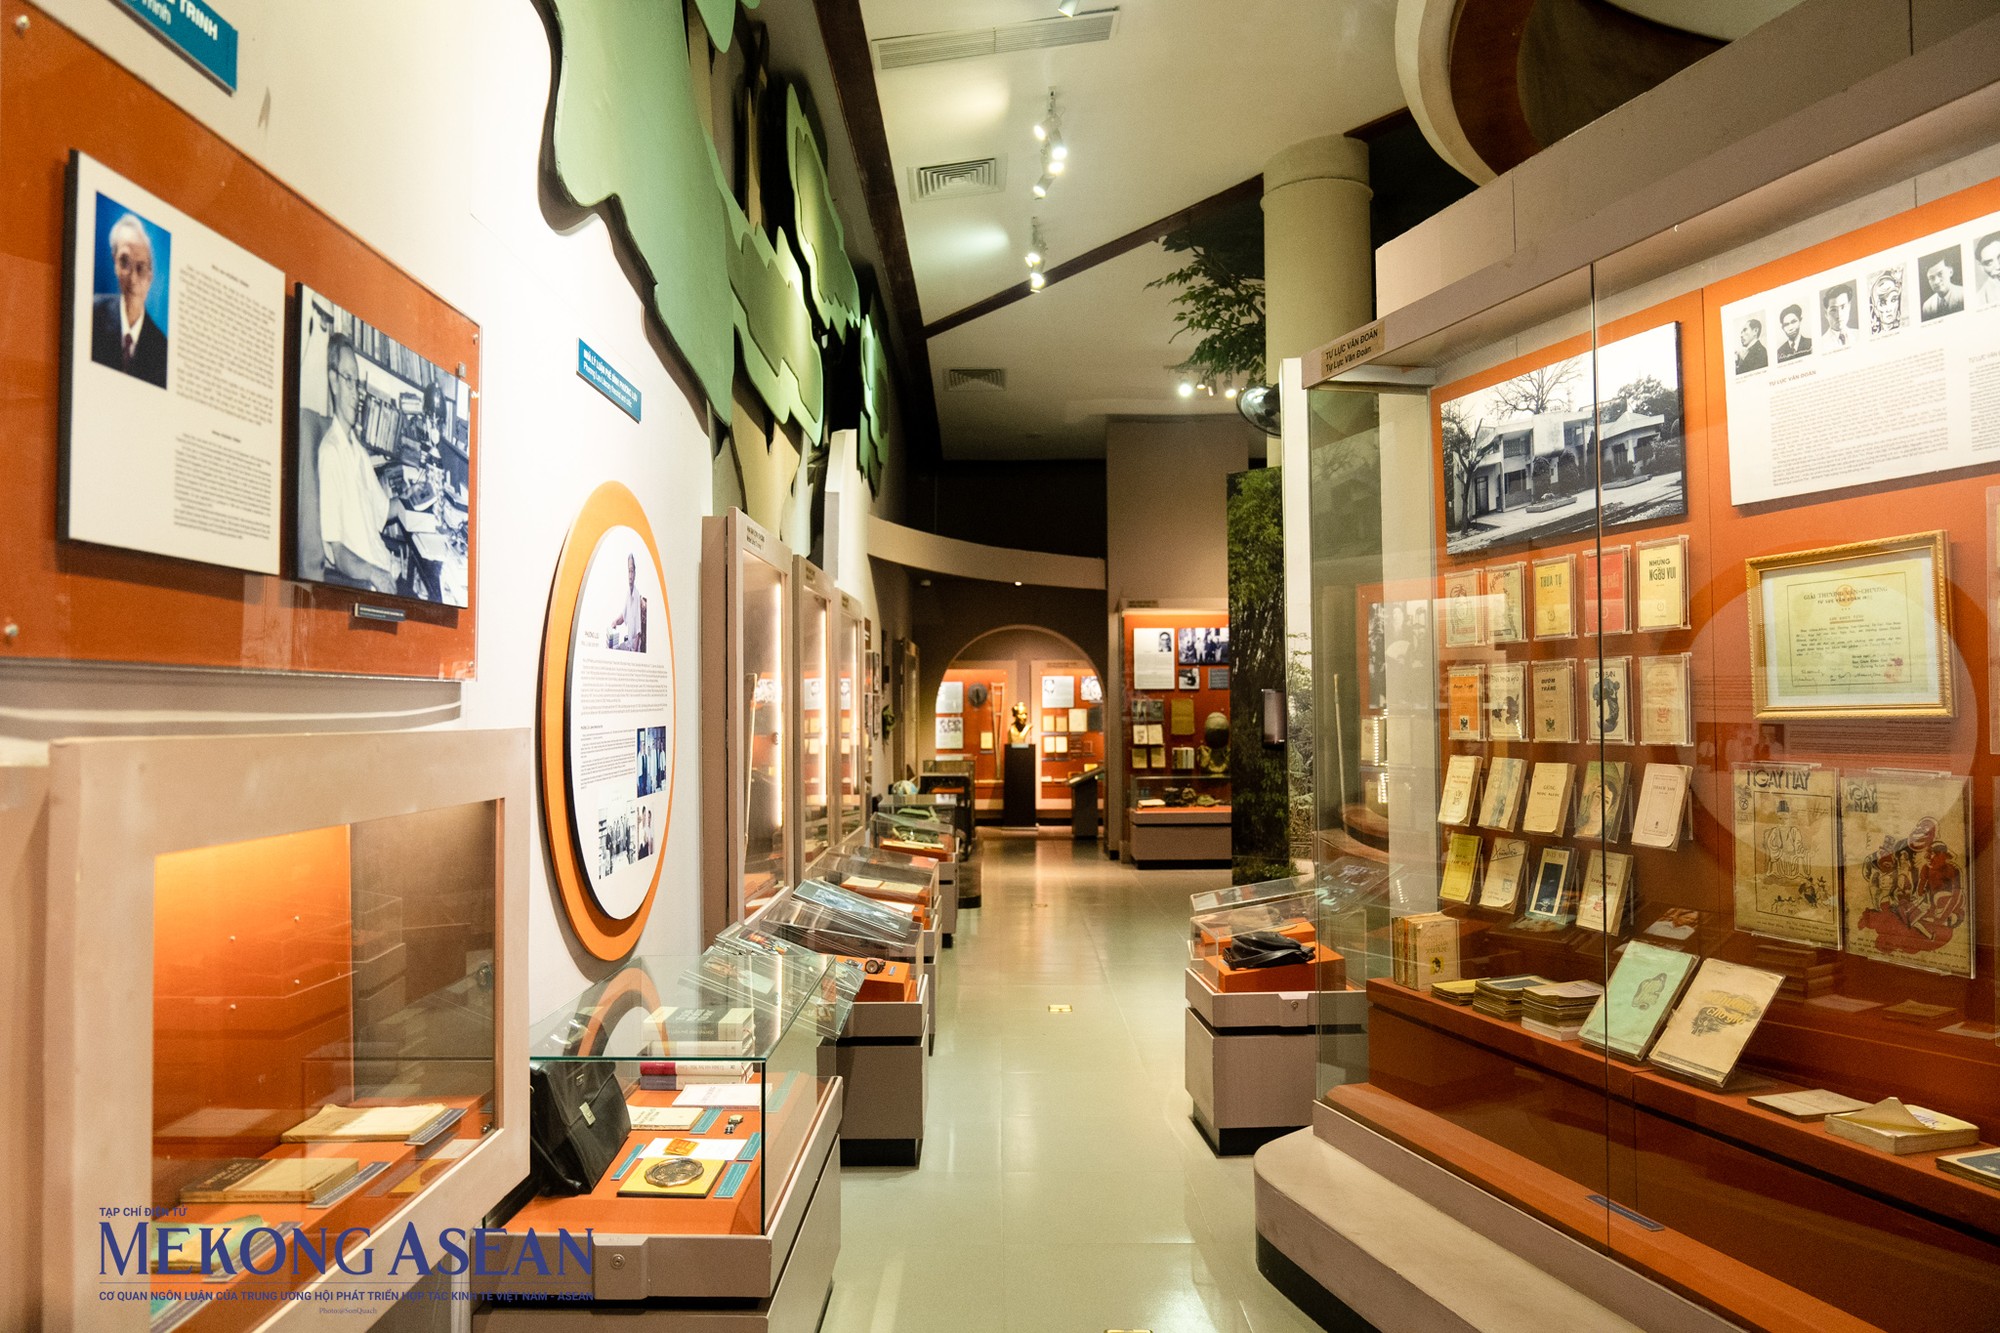 Tầng 3 của bảo tàng là nơi trưng bày về các nhà văn được Giải thưởng Nhà nước về văn học - nghệ thuật thời kỳ chống thực dân Pháp, văn học khu V, Nam Trung Bộ, các nhà văn sáng tác ở miền bắc, miền nam. Đây cũng là nơi đặt bức tượng của đại thi hào Rabindranath Tagore (1861-1941), đại diện tiêu biểu của văn hóa Ấn Độ, được tôn vinh là một trong “Tam vị nhất thể” của Ấn Độ hiện đại, cùng với Mahatma Gandhi và Jawarharlal Nehru.